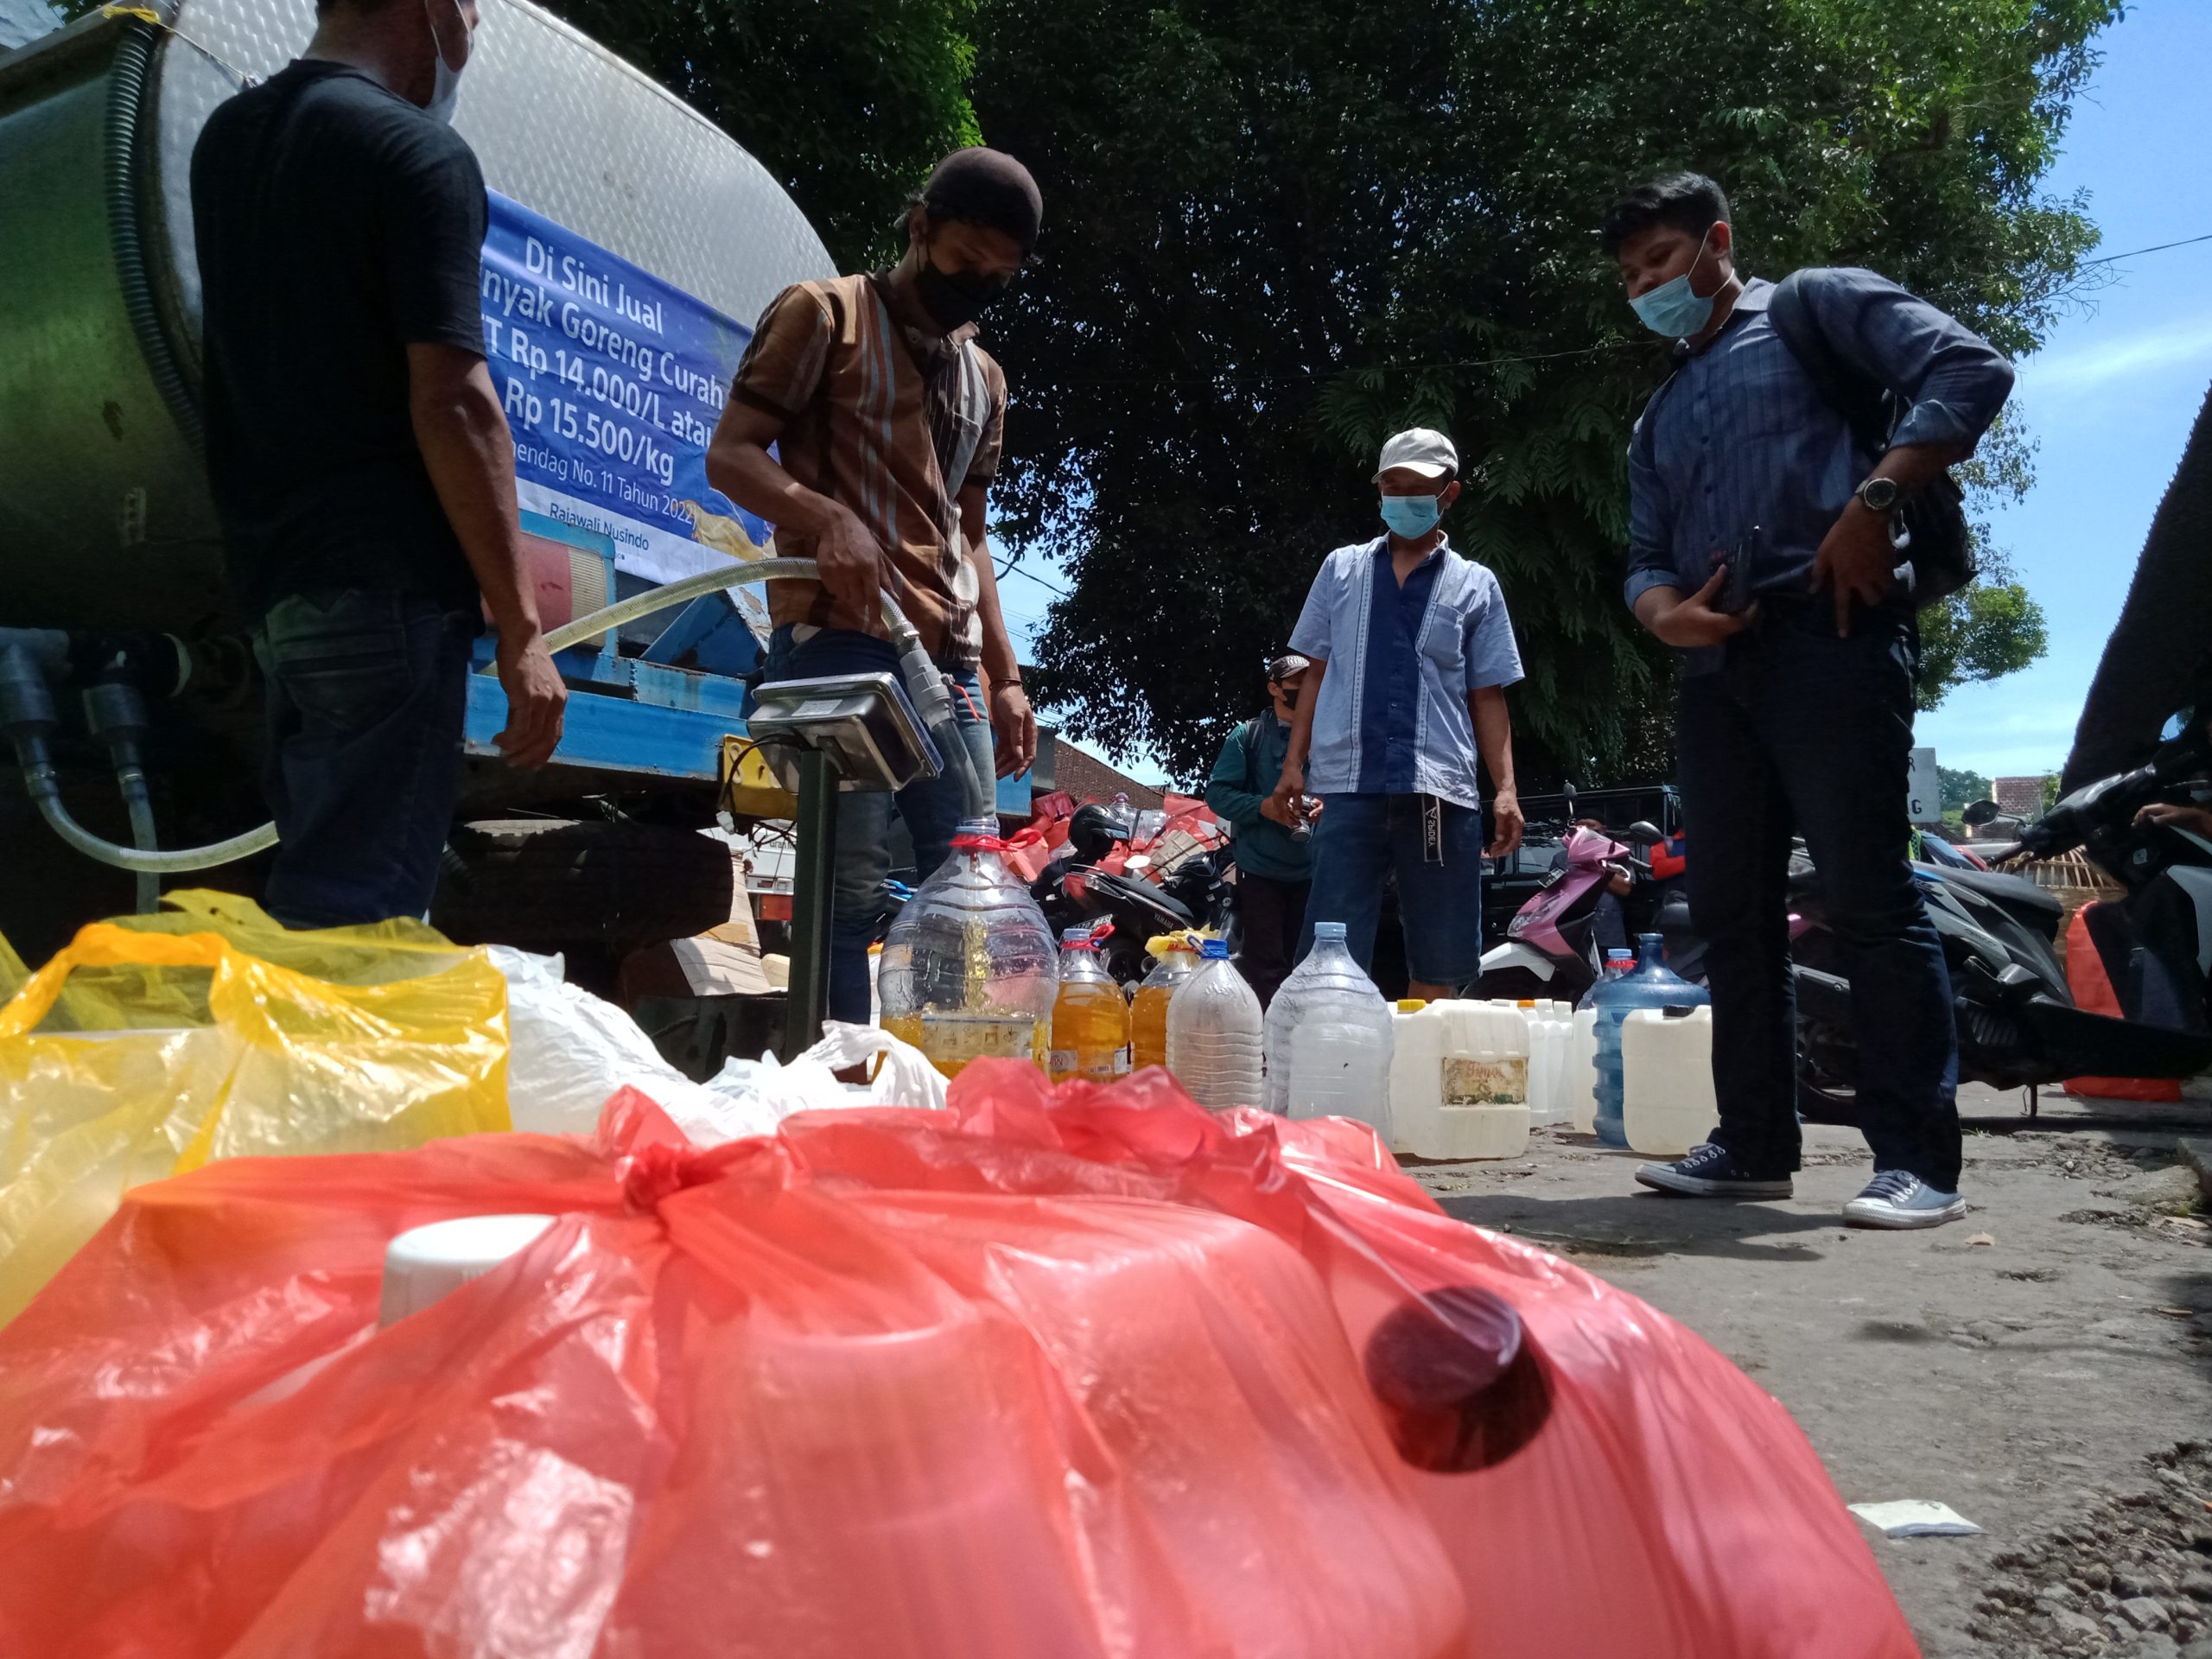 Tangani Kelangkaan, Ribuan Liter Migor Curah Didistribusikan ke Pedagang Pasar Kota Malang